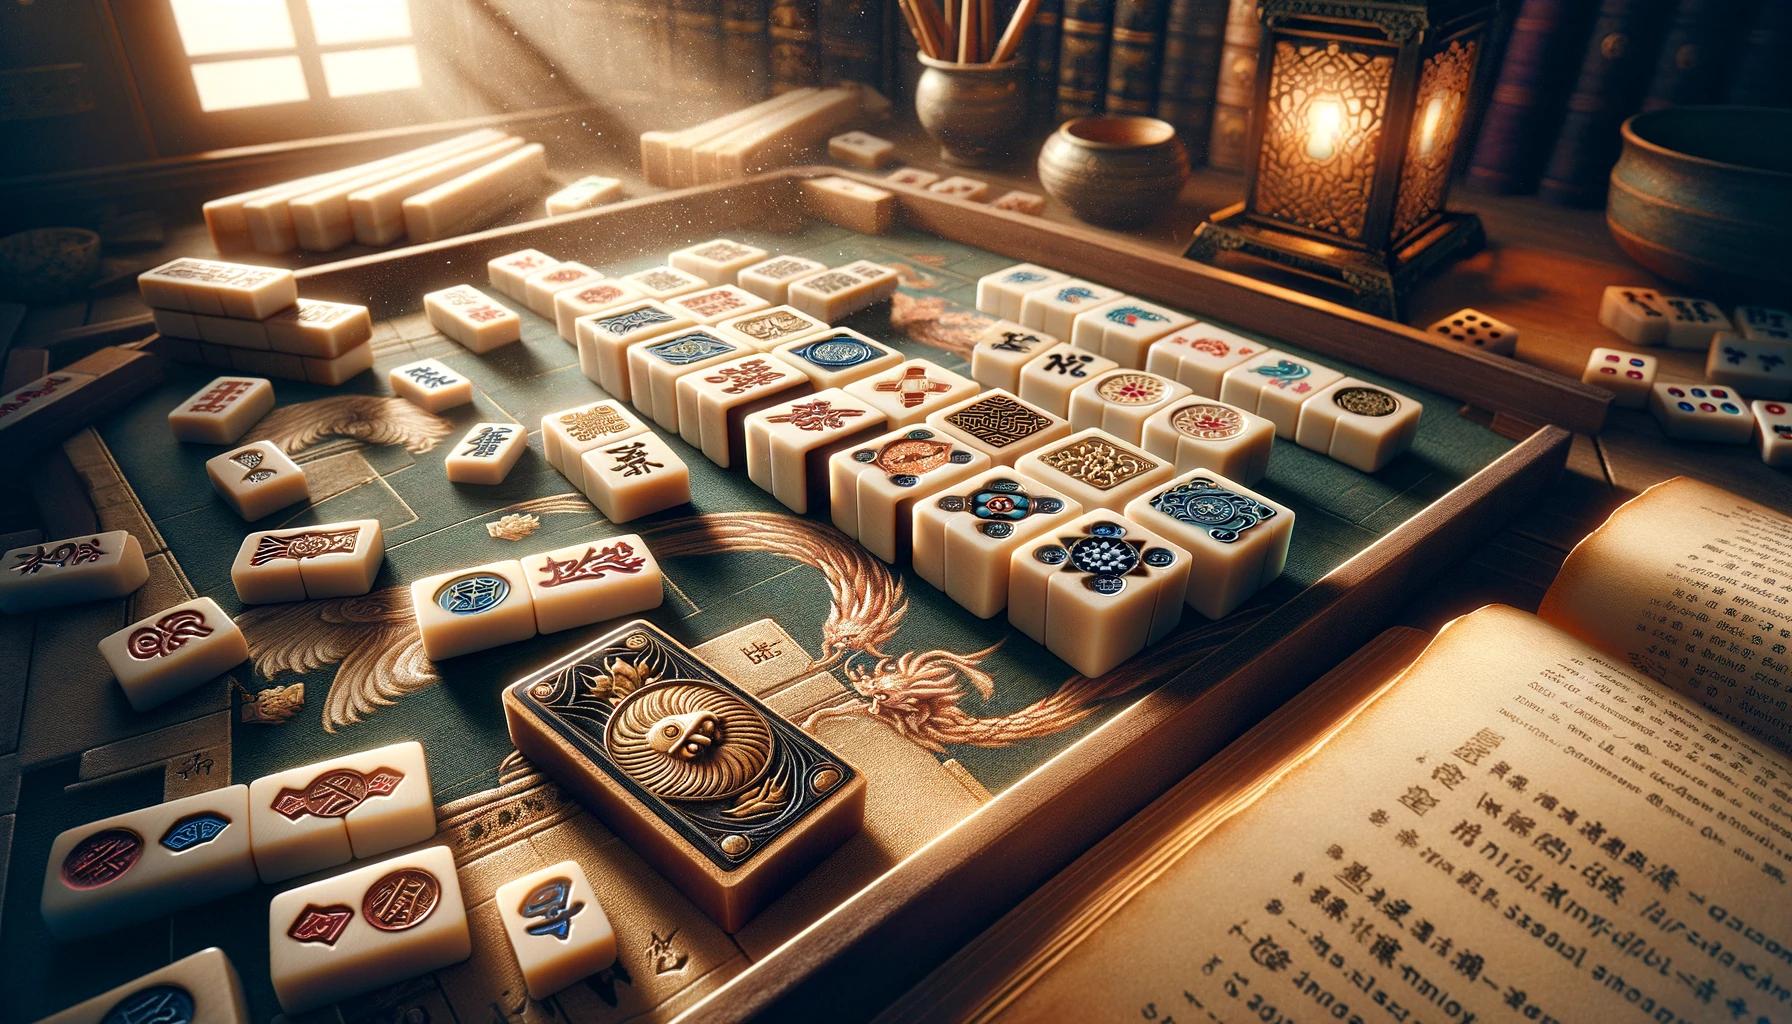 Tudo sobre Mahjong: Atualizações, Eventos, Guias, Dicas e Curiosidades Interessantes.